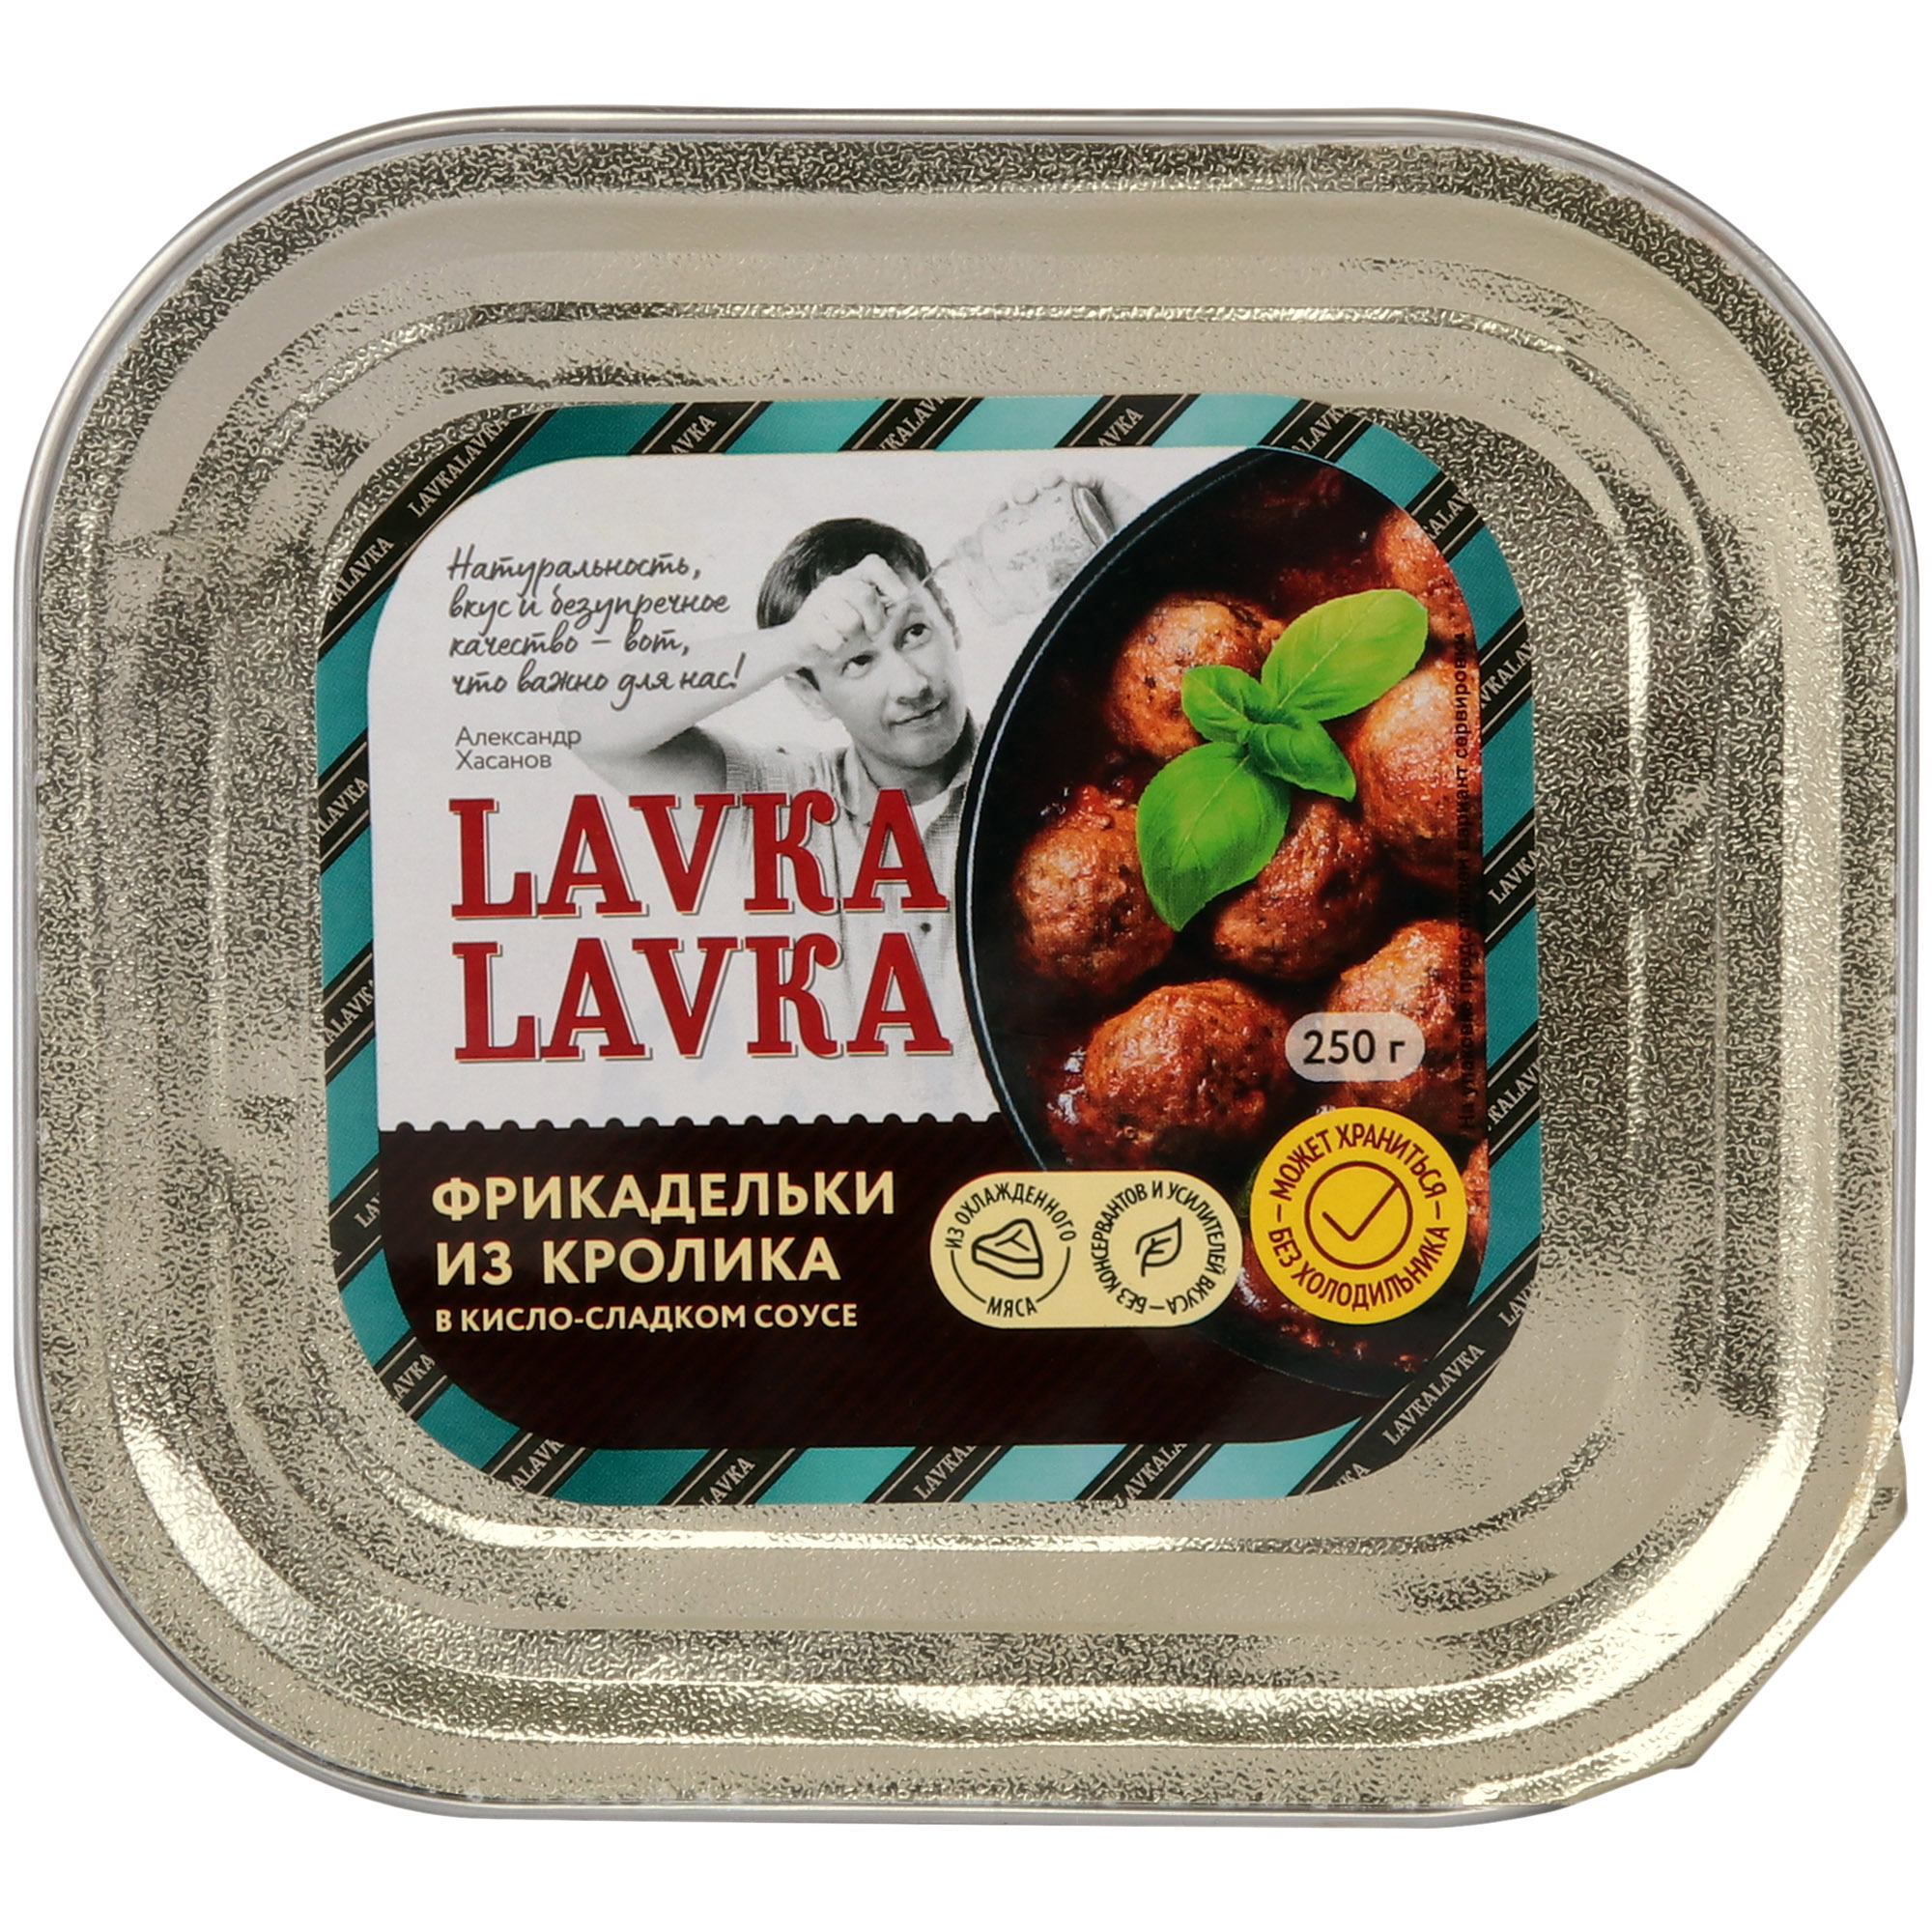 Фрикадельки LavkaLavka из кролика, 250 г фрикадельки из грудки индейки lavkalavka в сливочном соусе 250 г